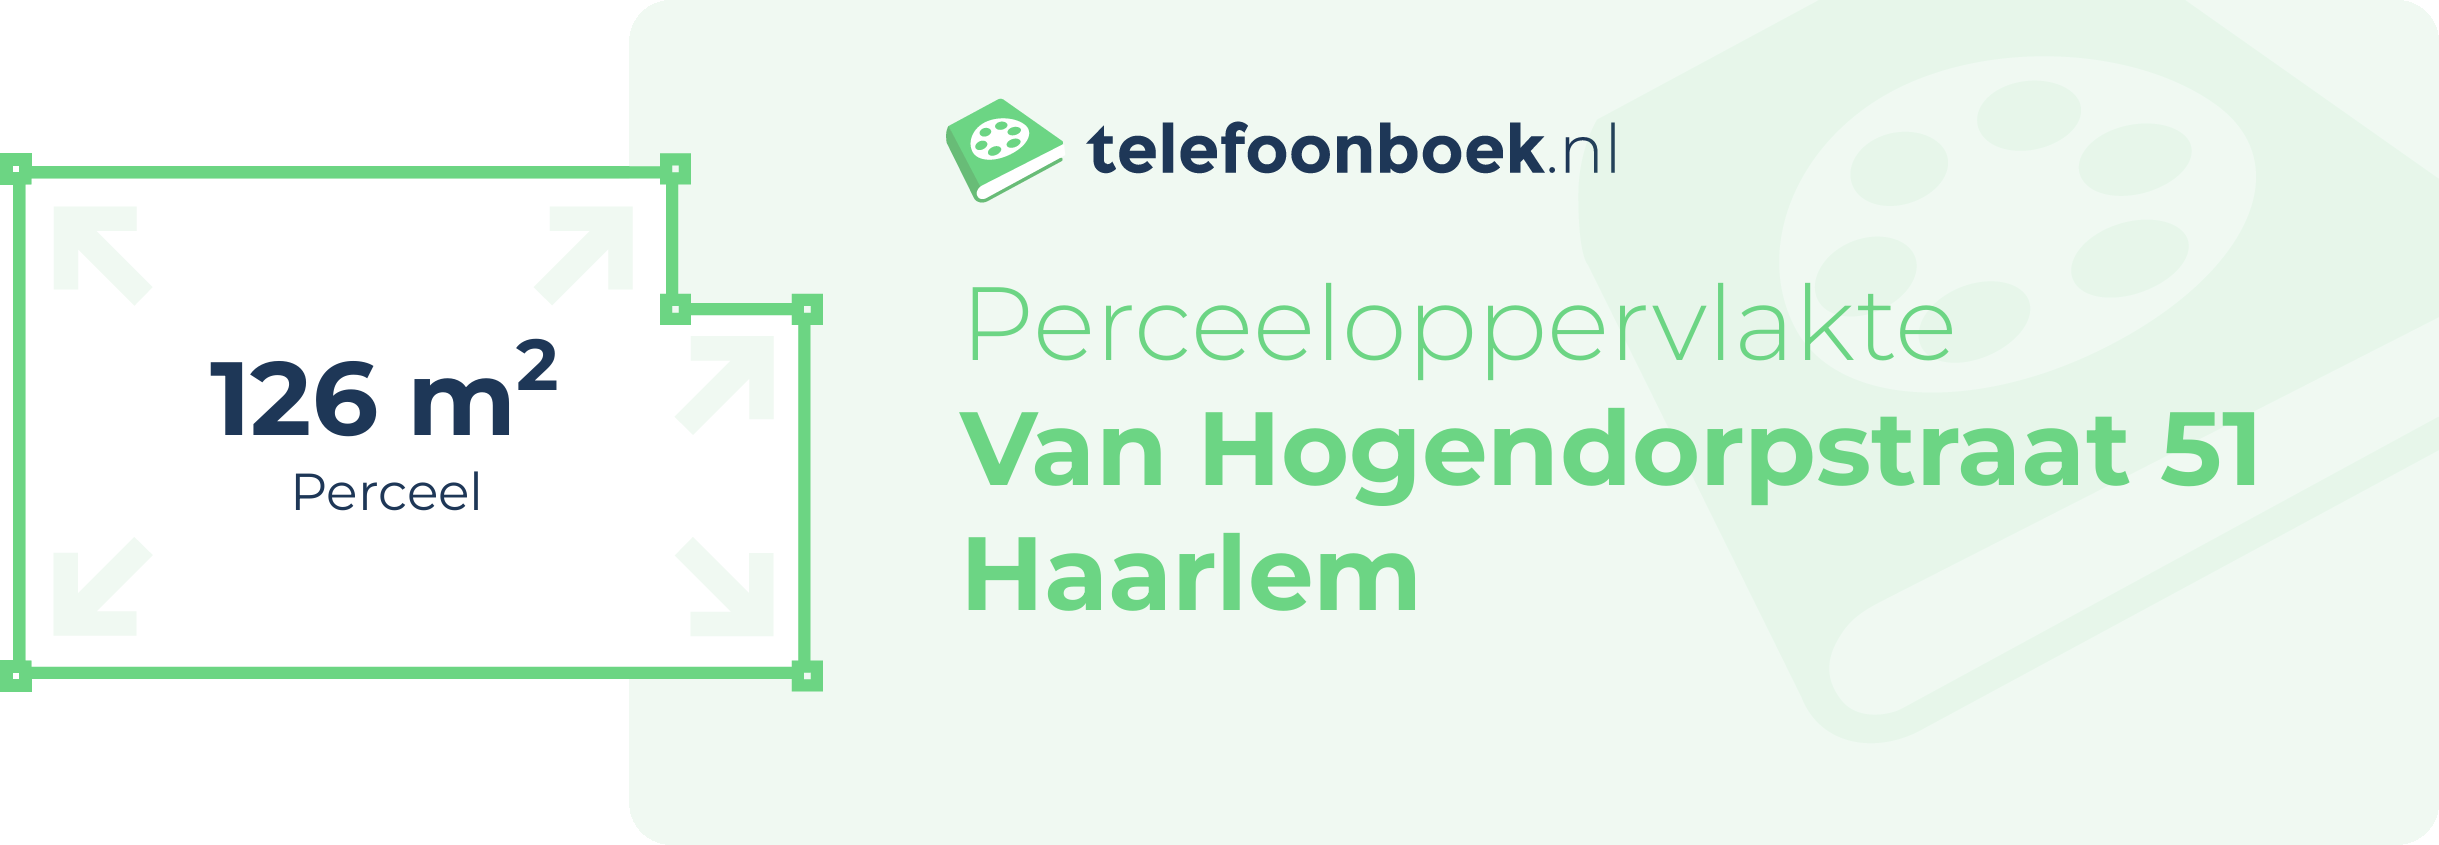 Perceeloppervlakte Van Hogendorpstraat 51 Haarlem